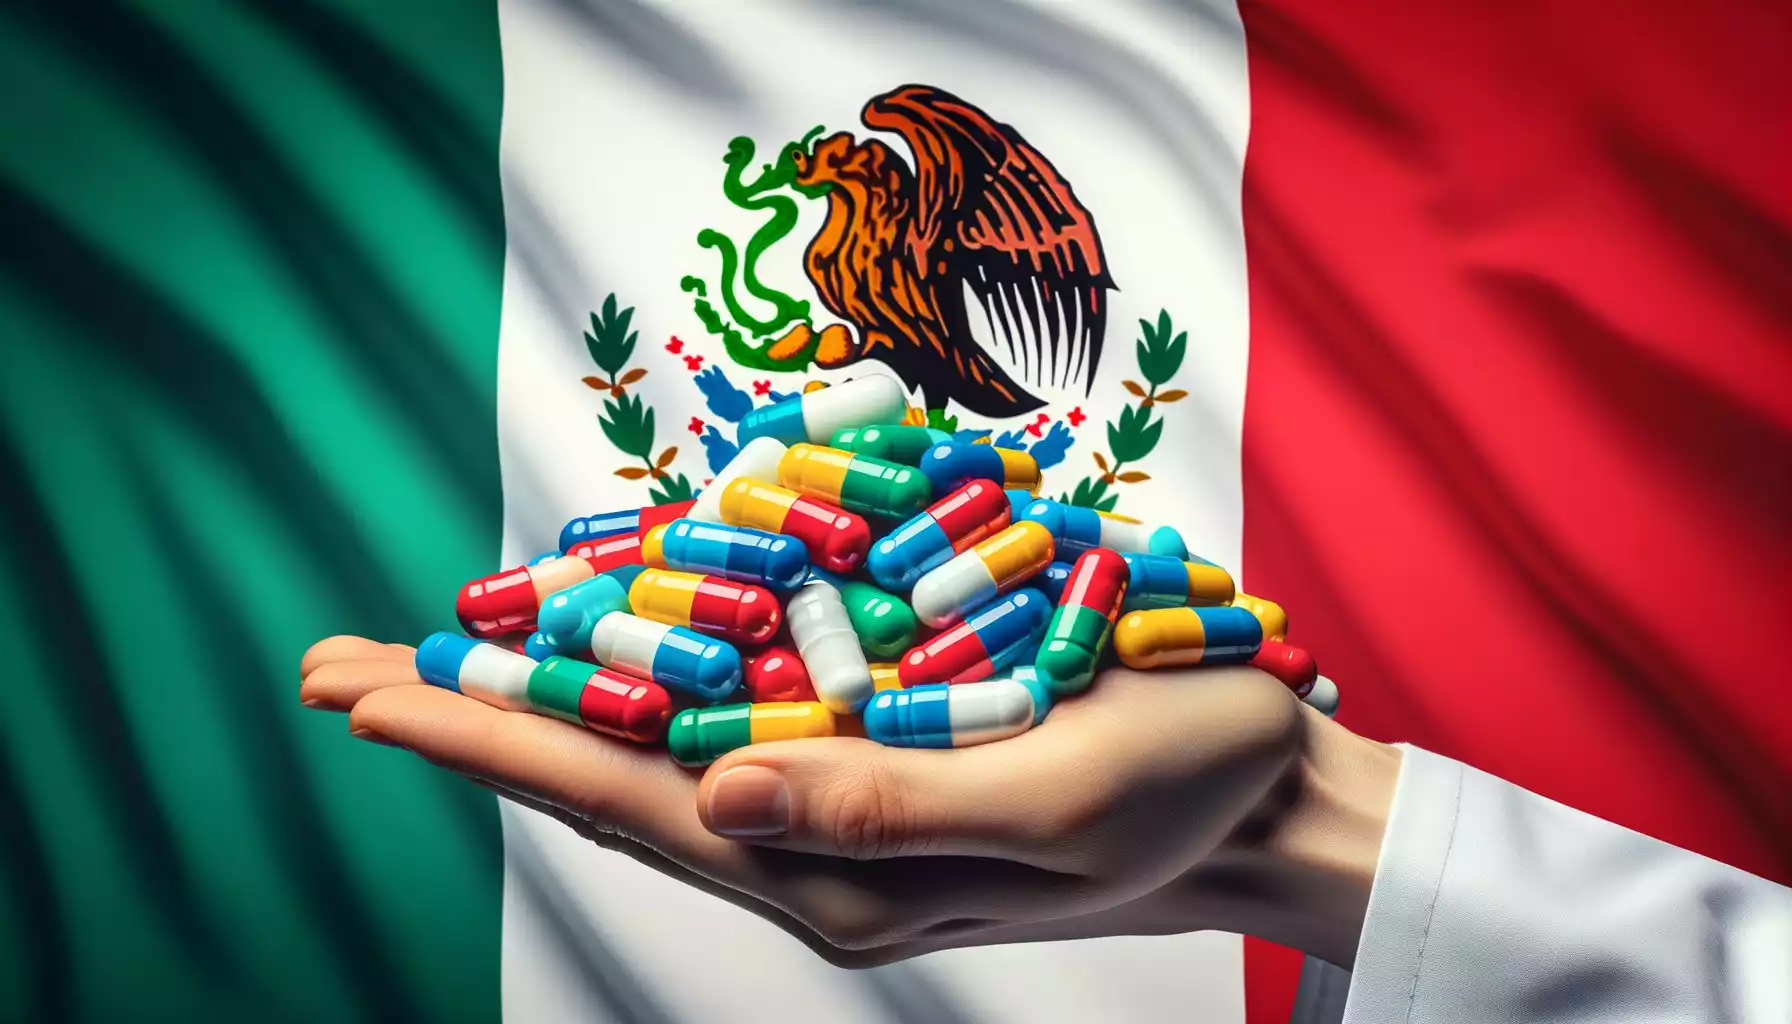 Comprar Píldoras Abortivas en México Panda.Healthcare